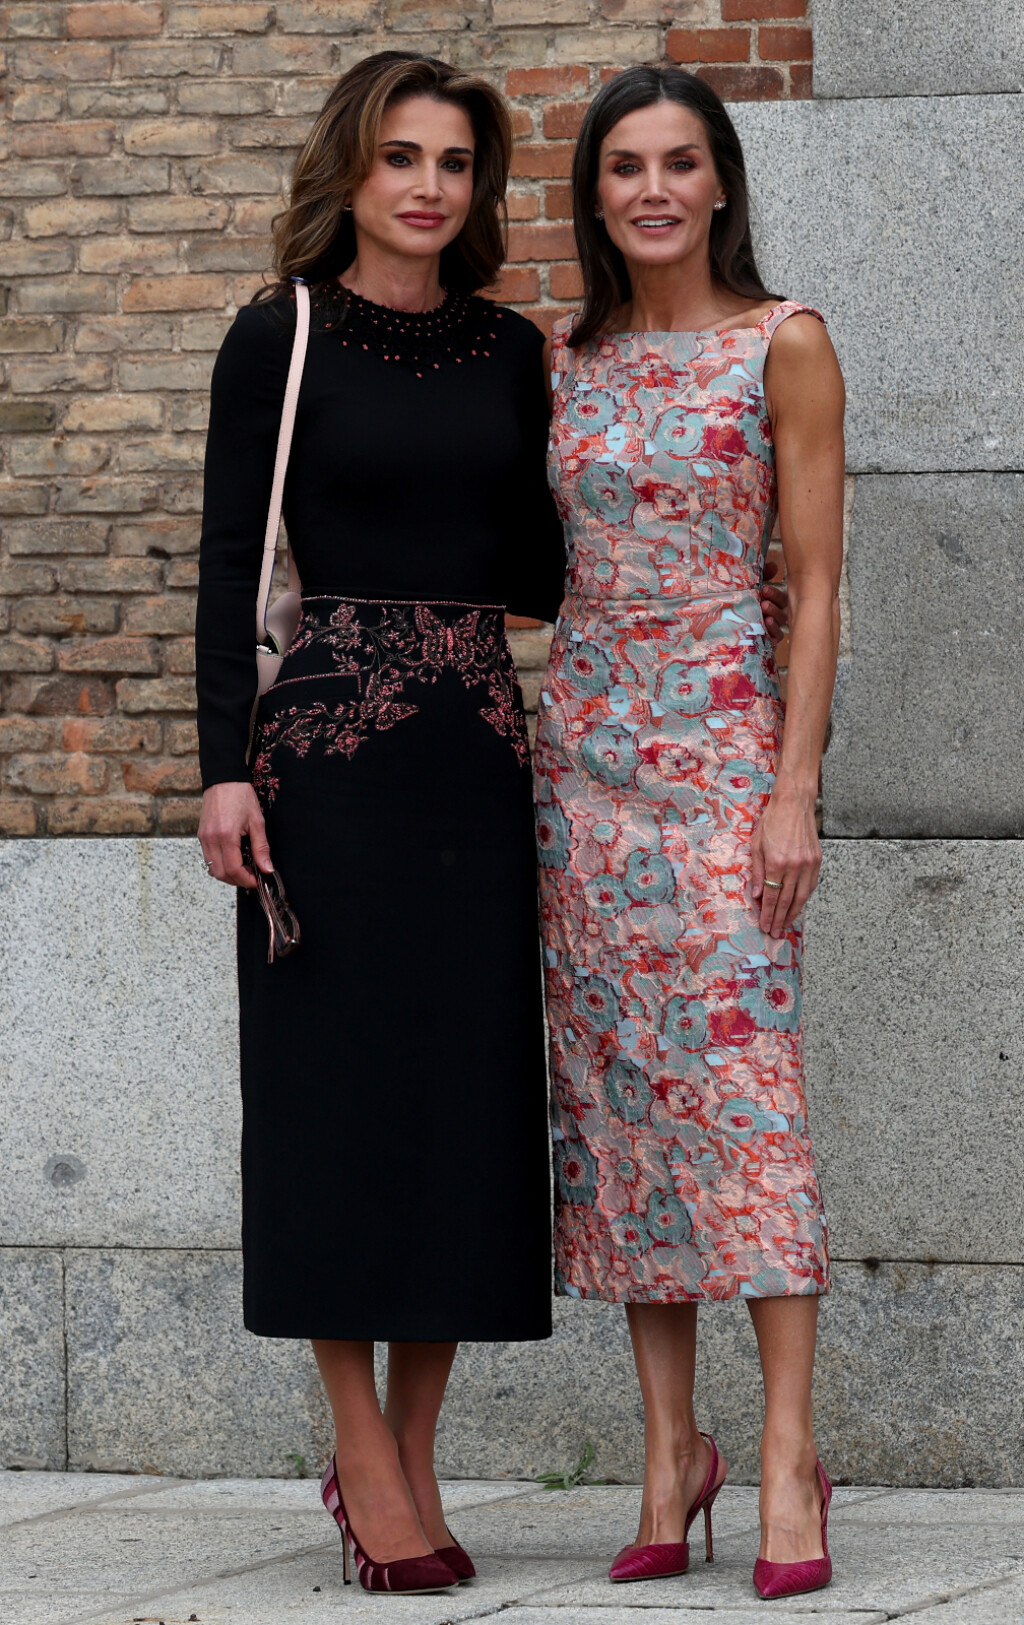 Kraljica Letizia i kraljica Rania susrele su se u Madridu - 6